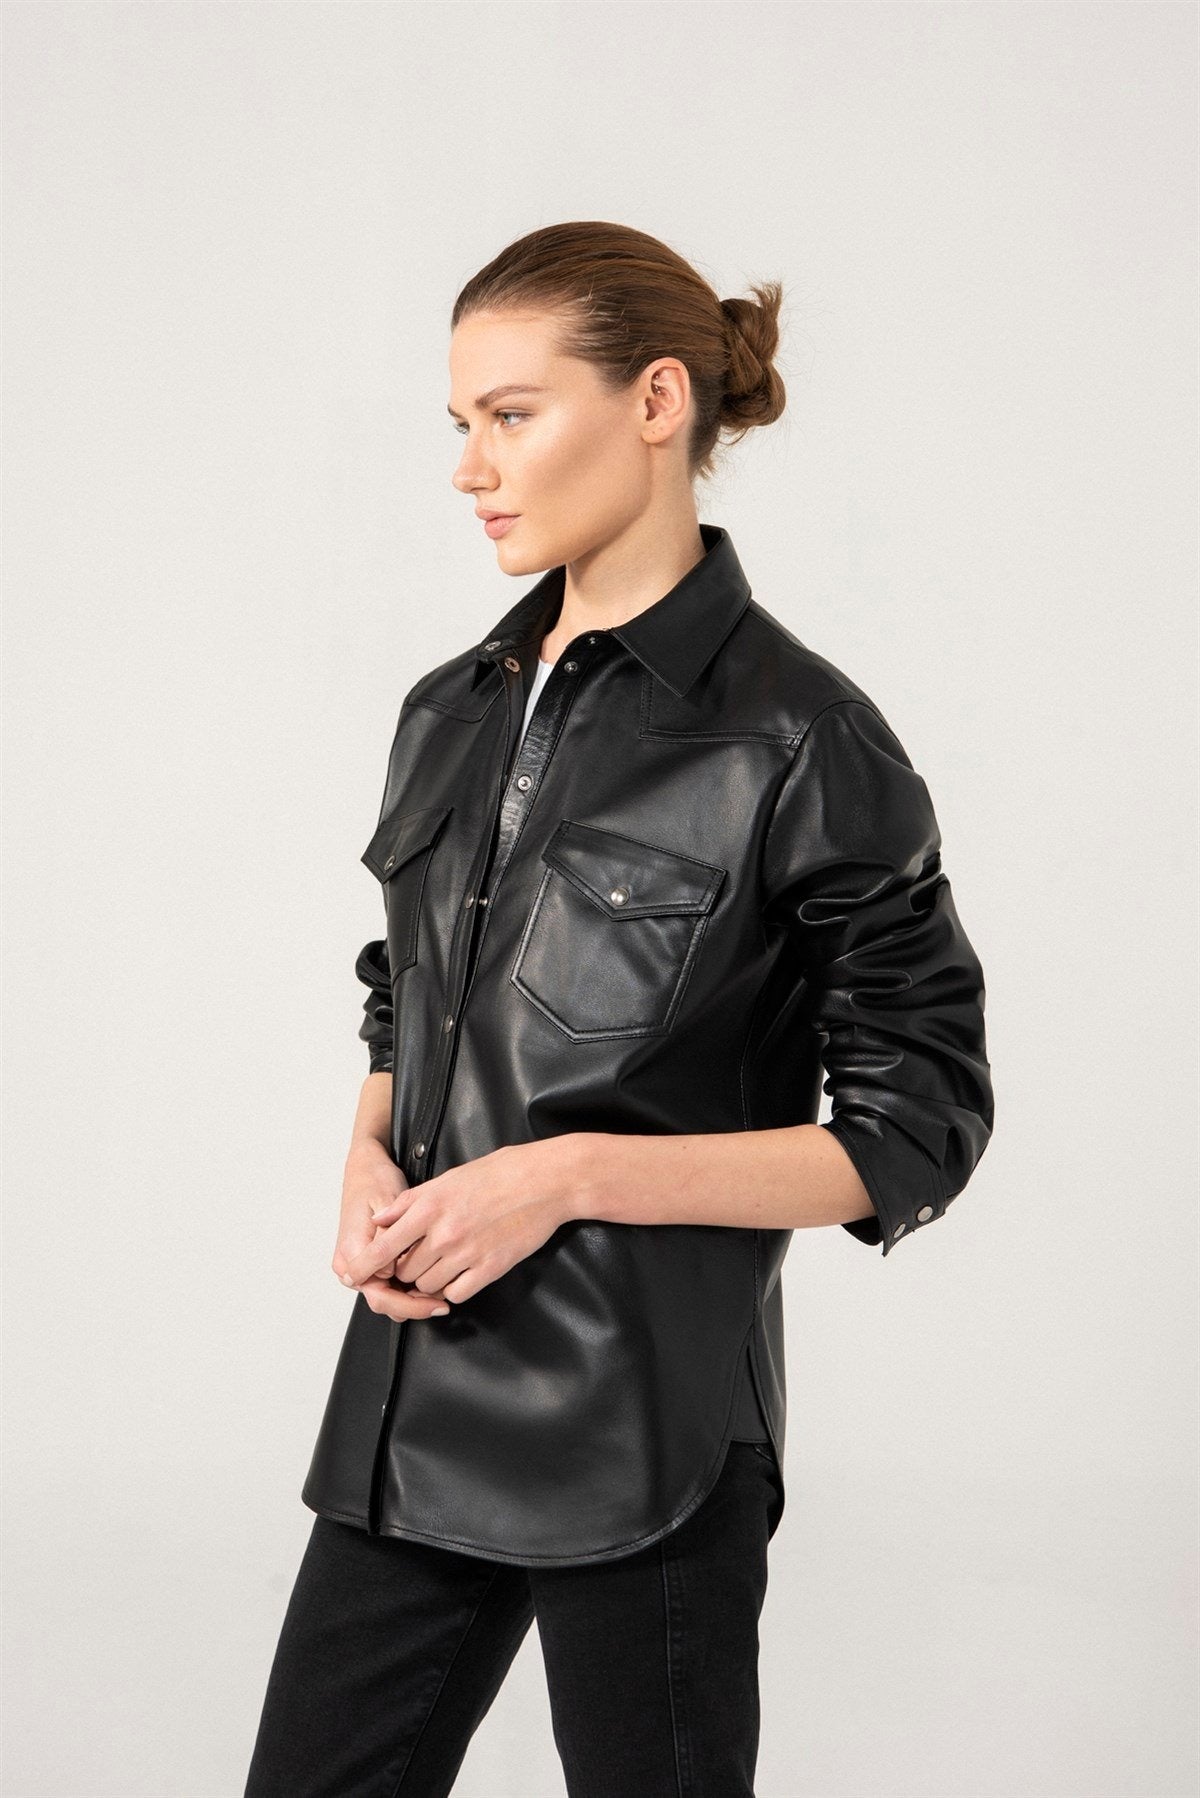 Women's Stylish Black Leather Shirt Jacket